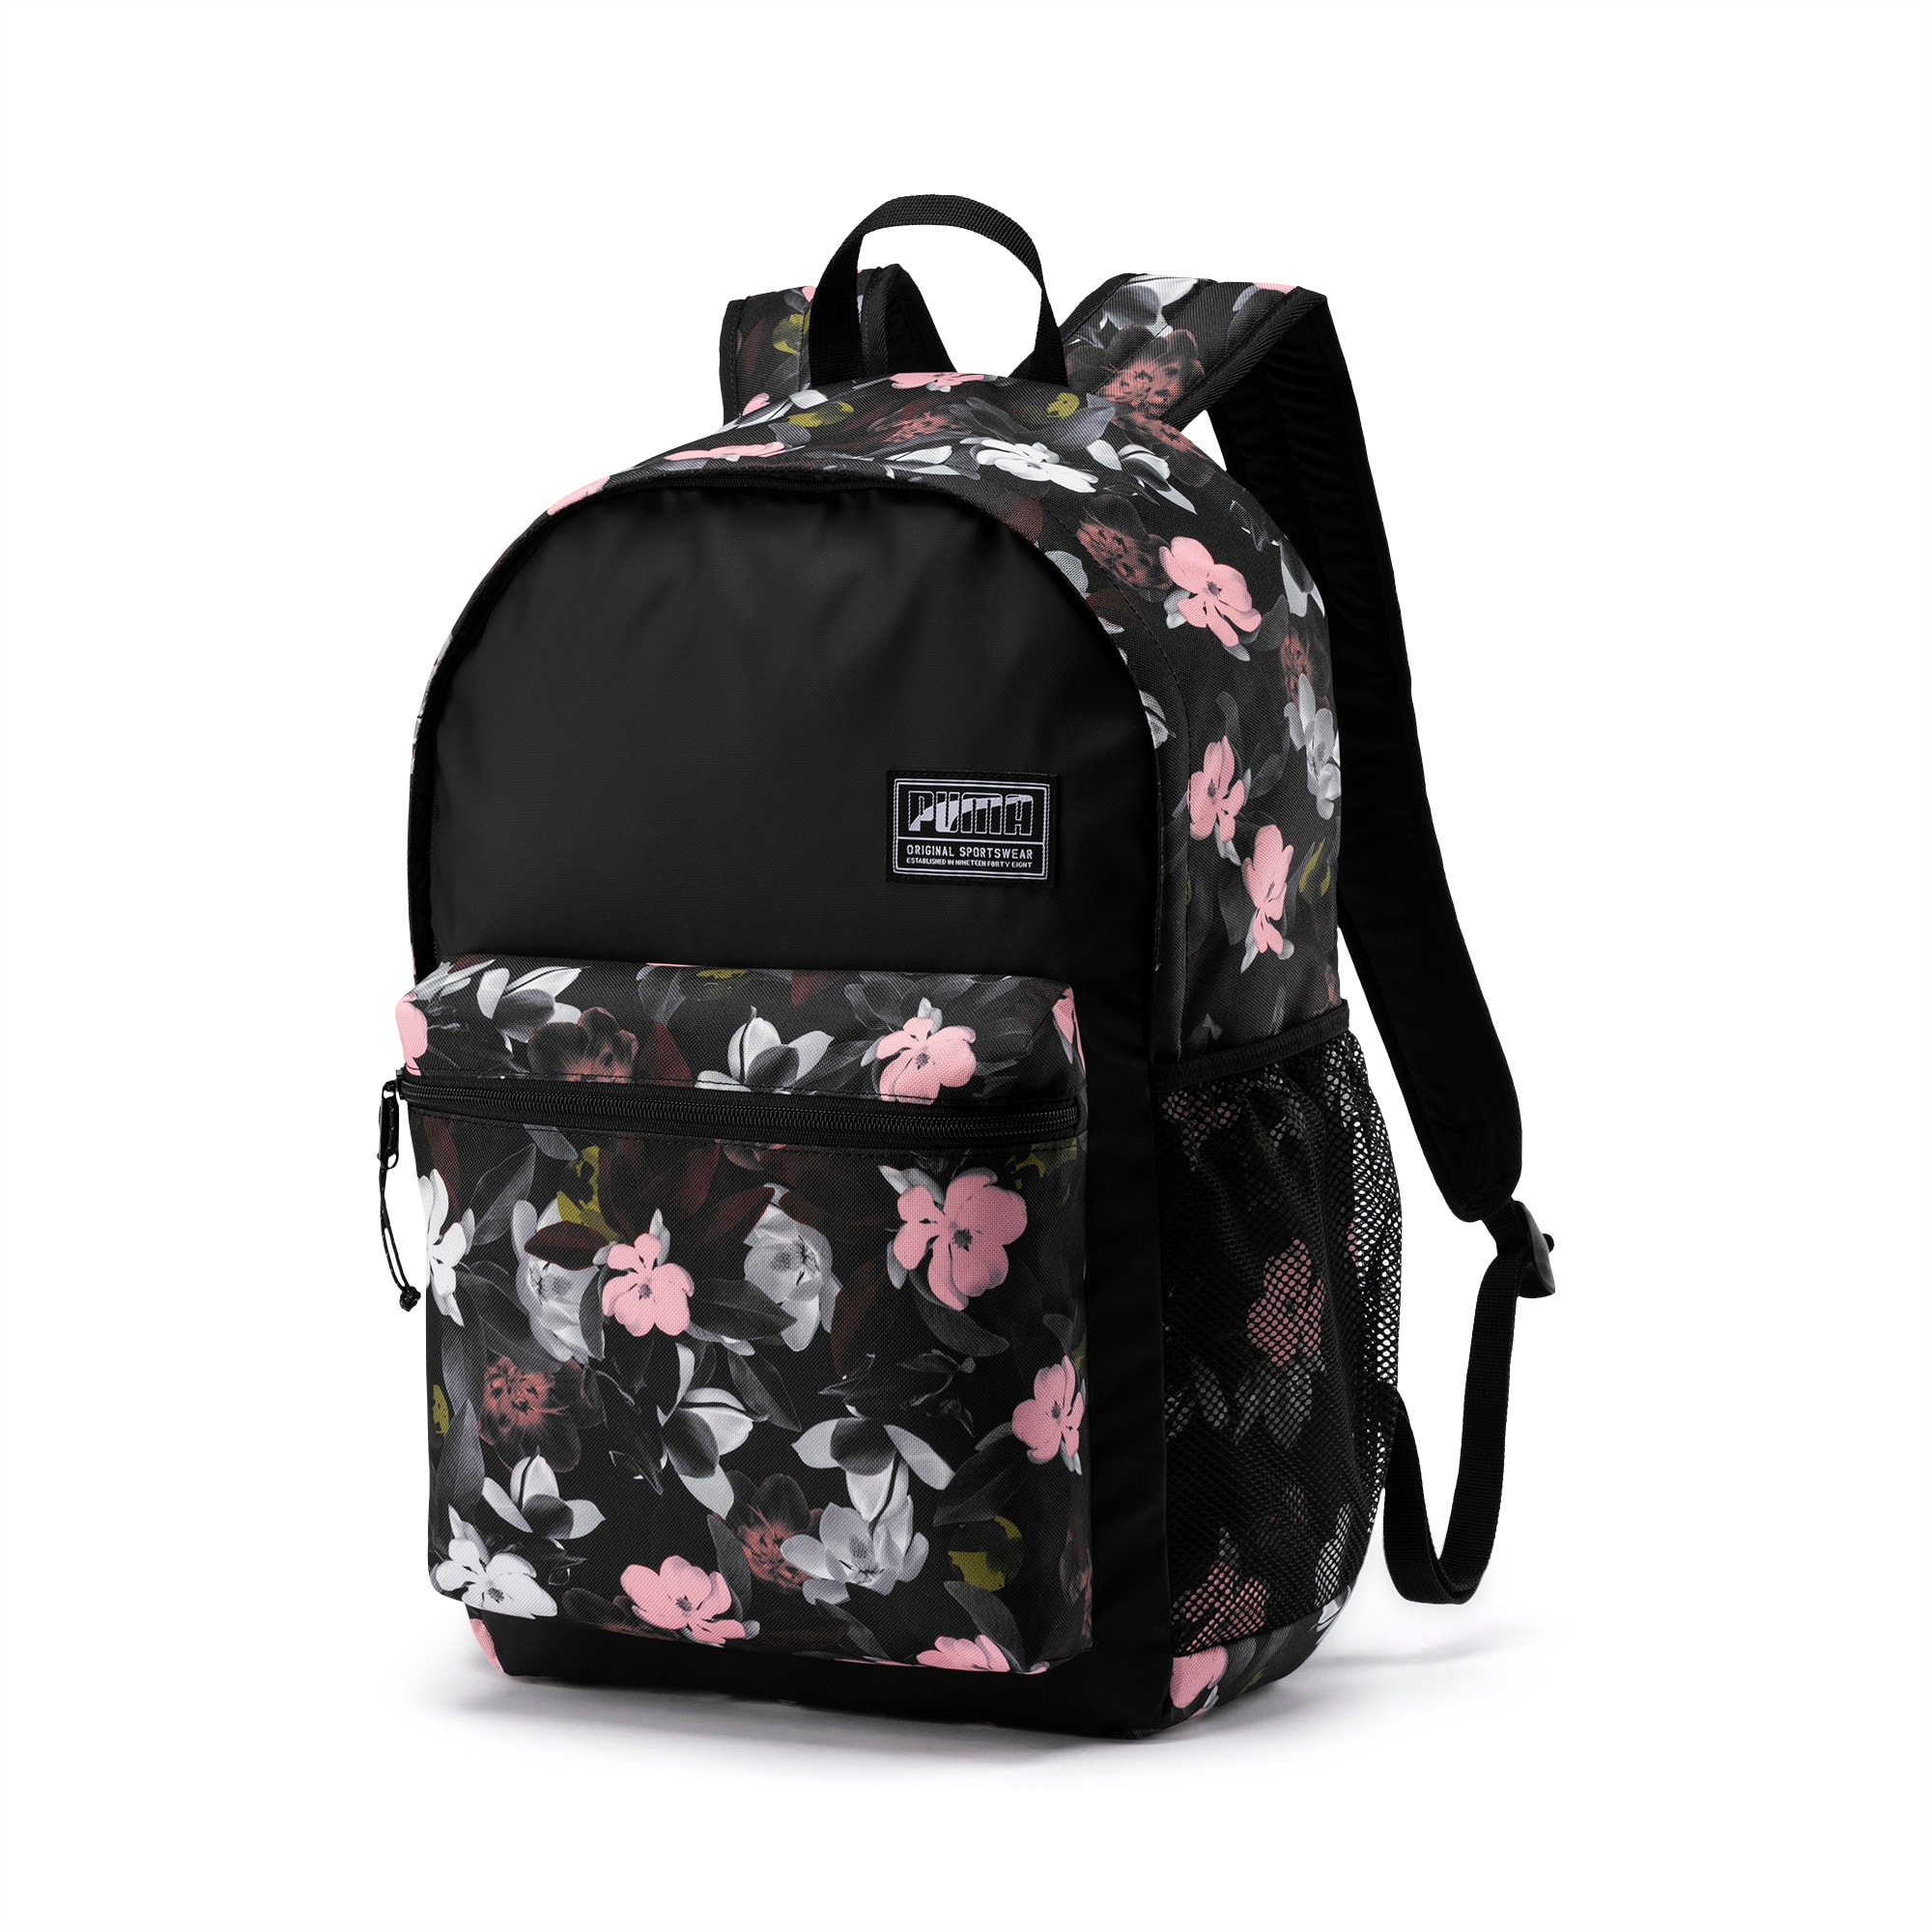 mochila puma academy backpack